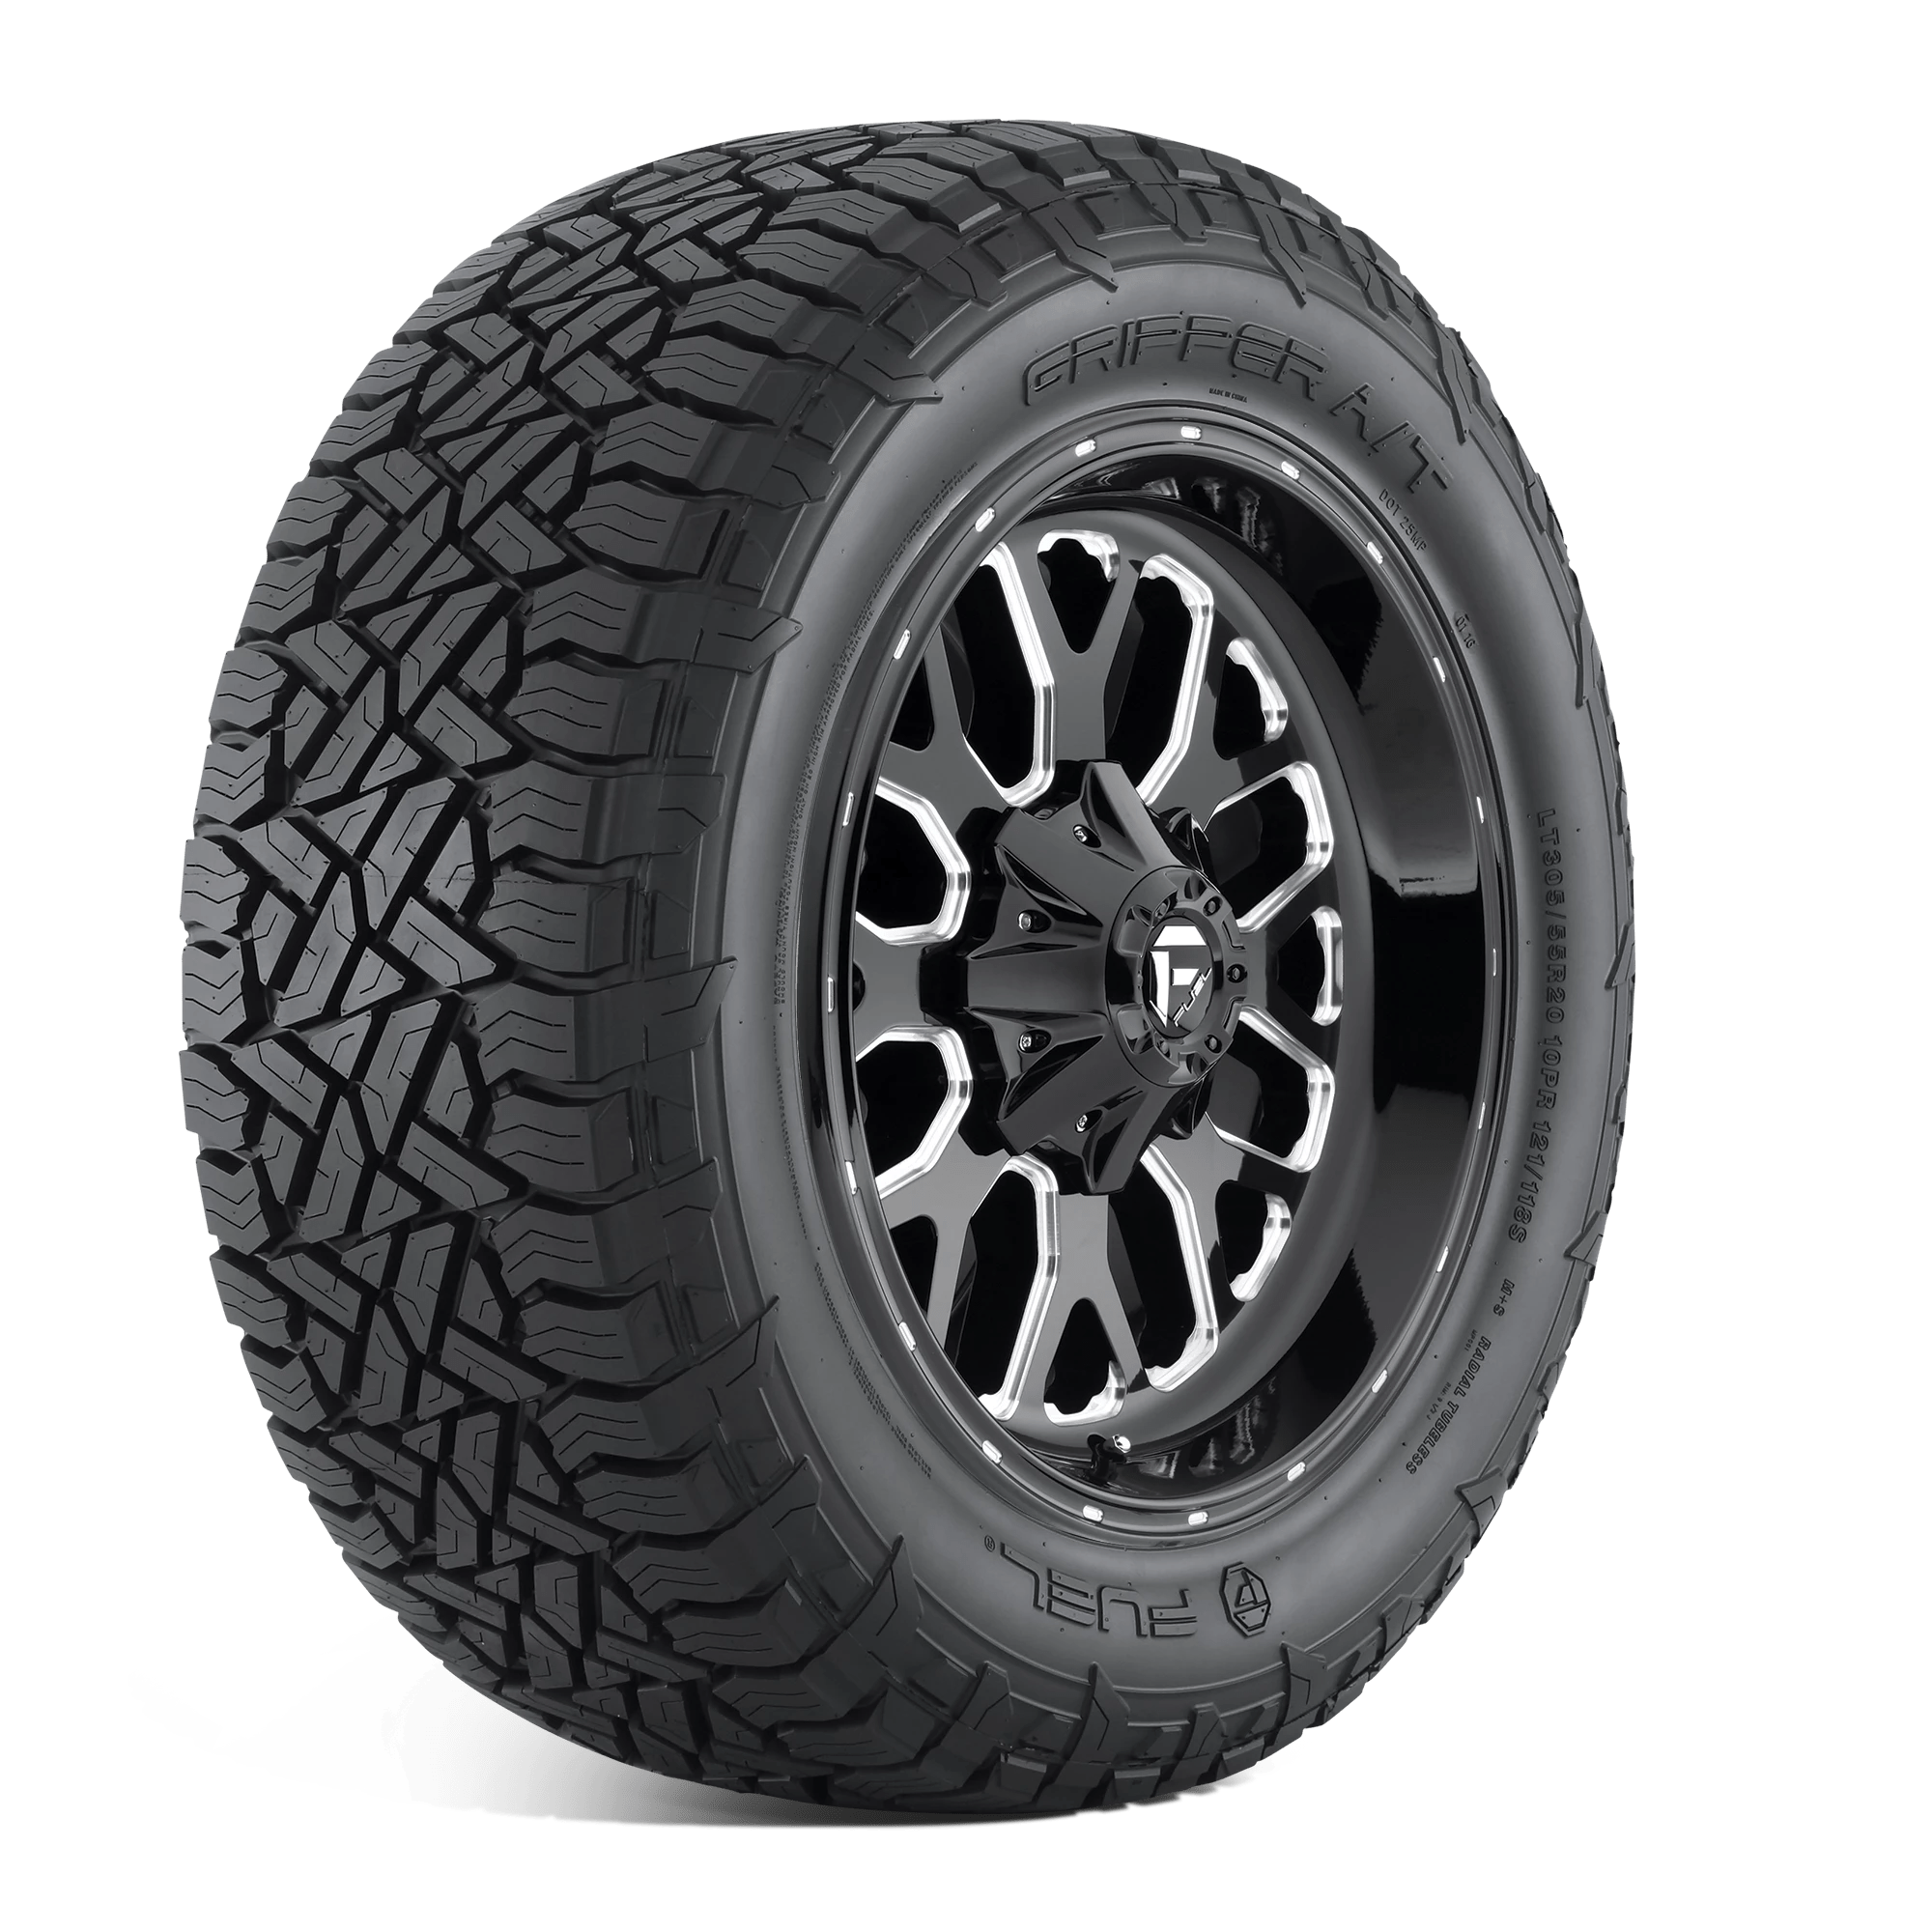 FUEL GRIPPER AT 265/60R18 (30.5X10.4R 18) Tires